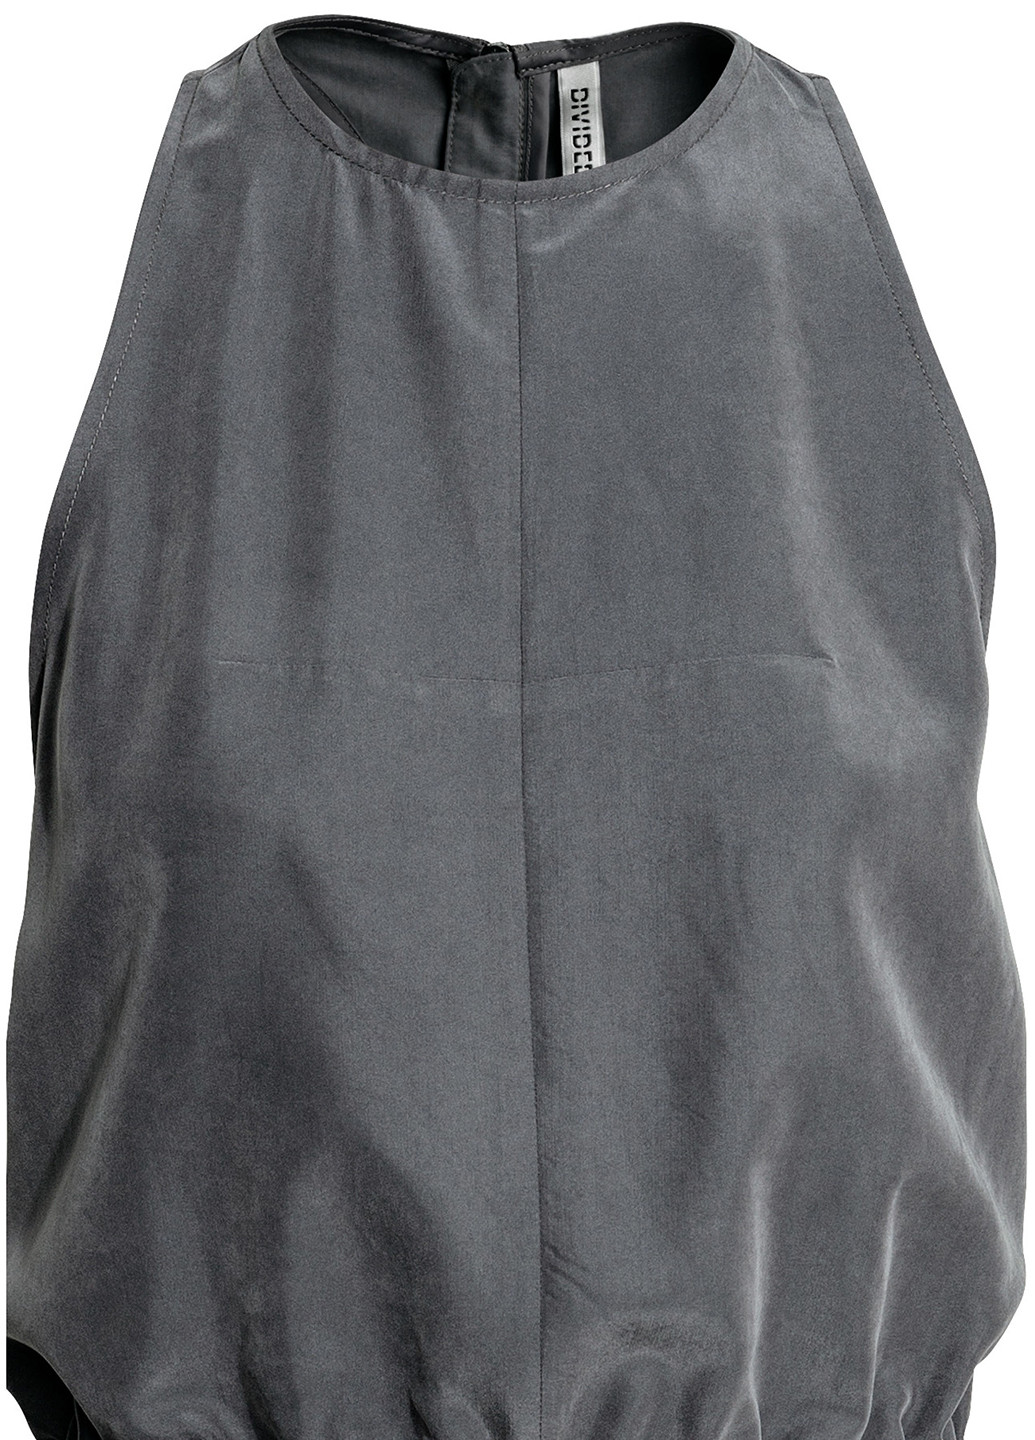 Комбинезон H&M комбинезон-шорты меланж серый кэжуал